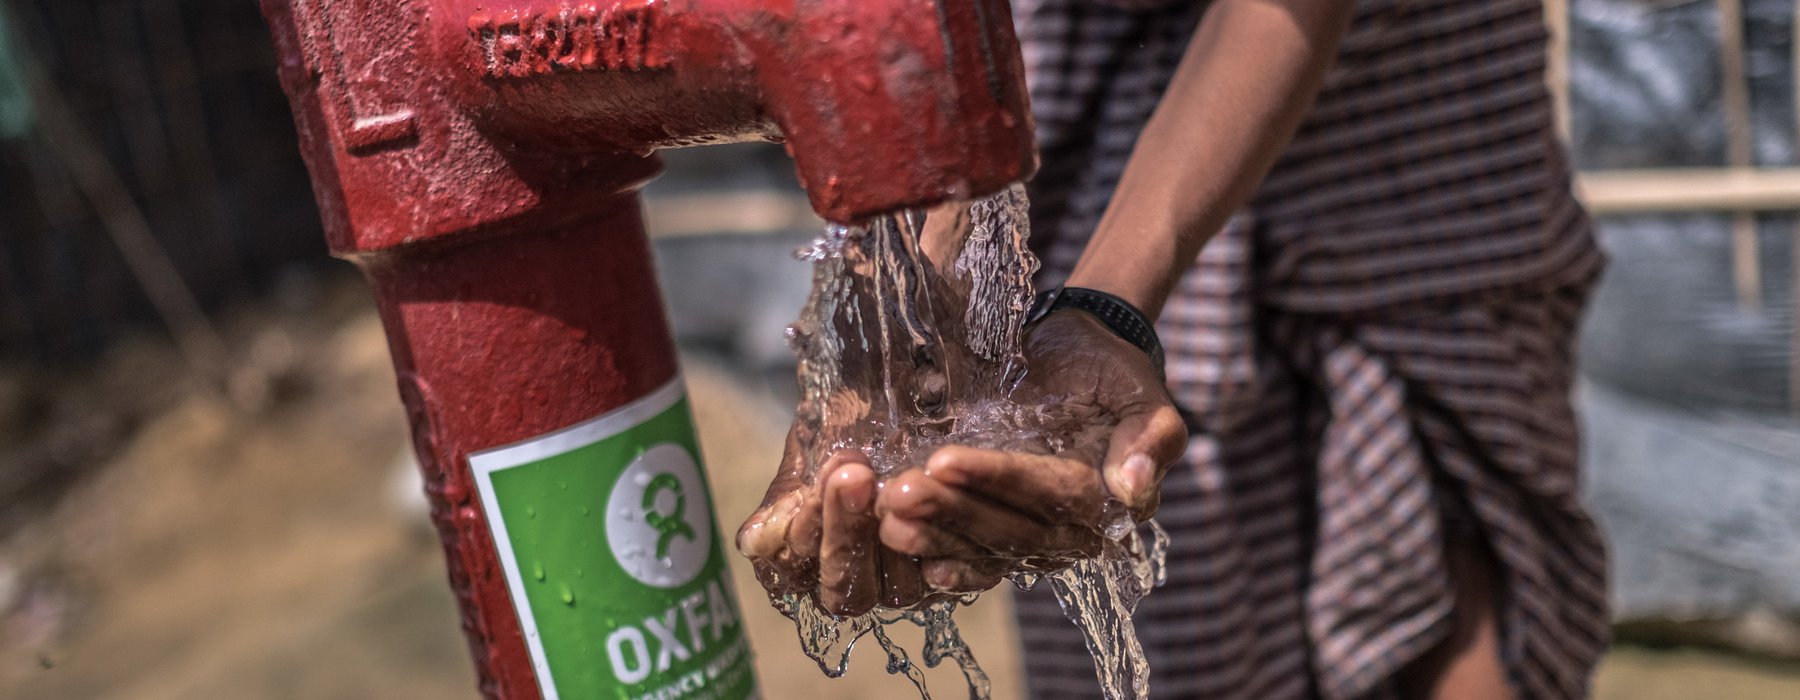 Oxfam water pump in Balukhali Camp